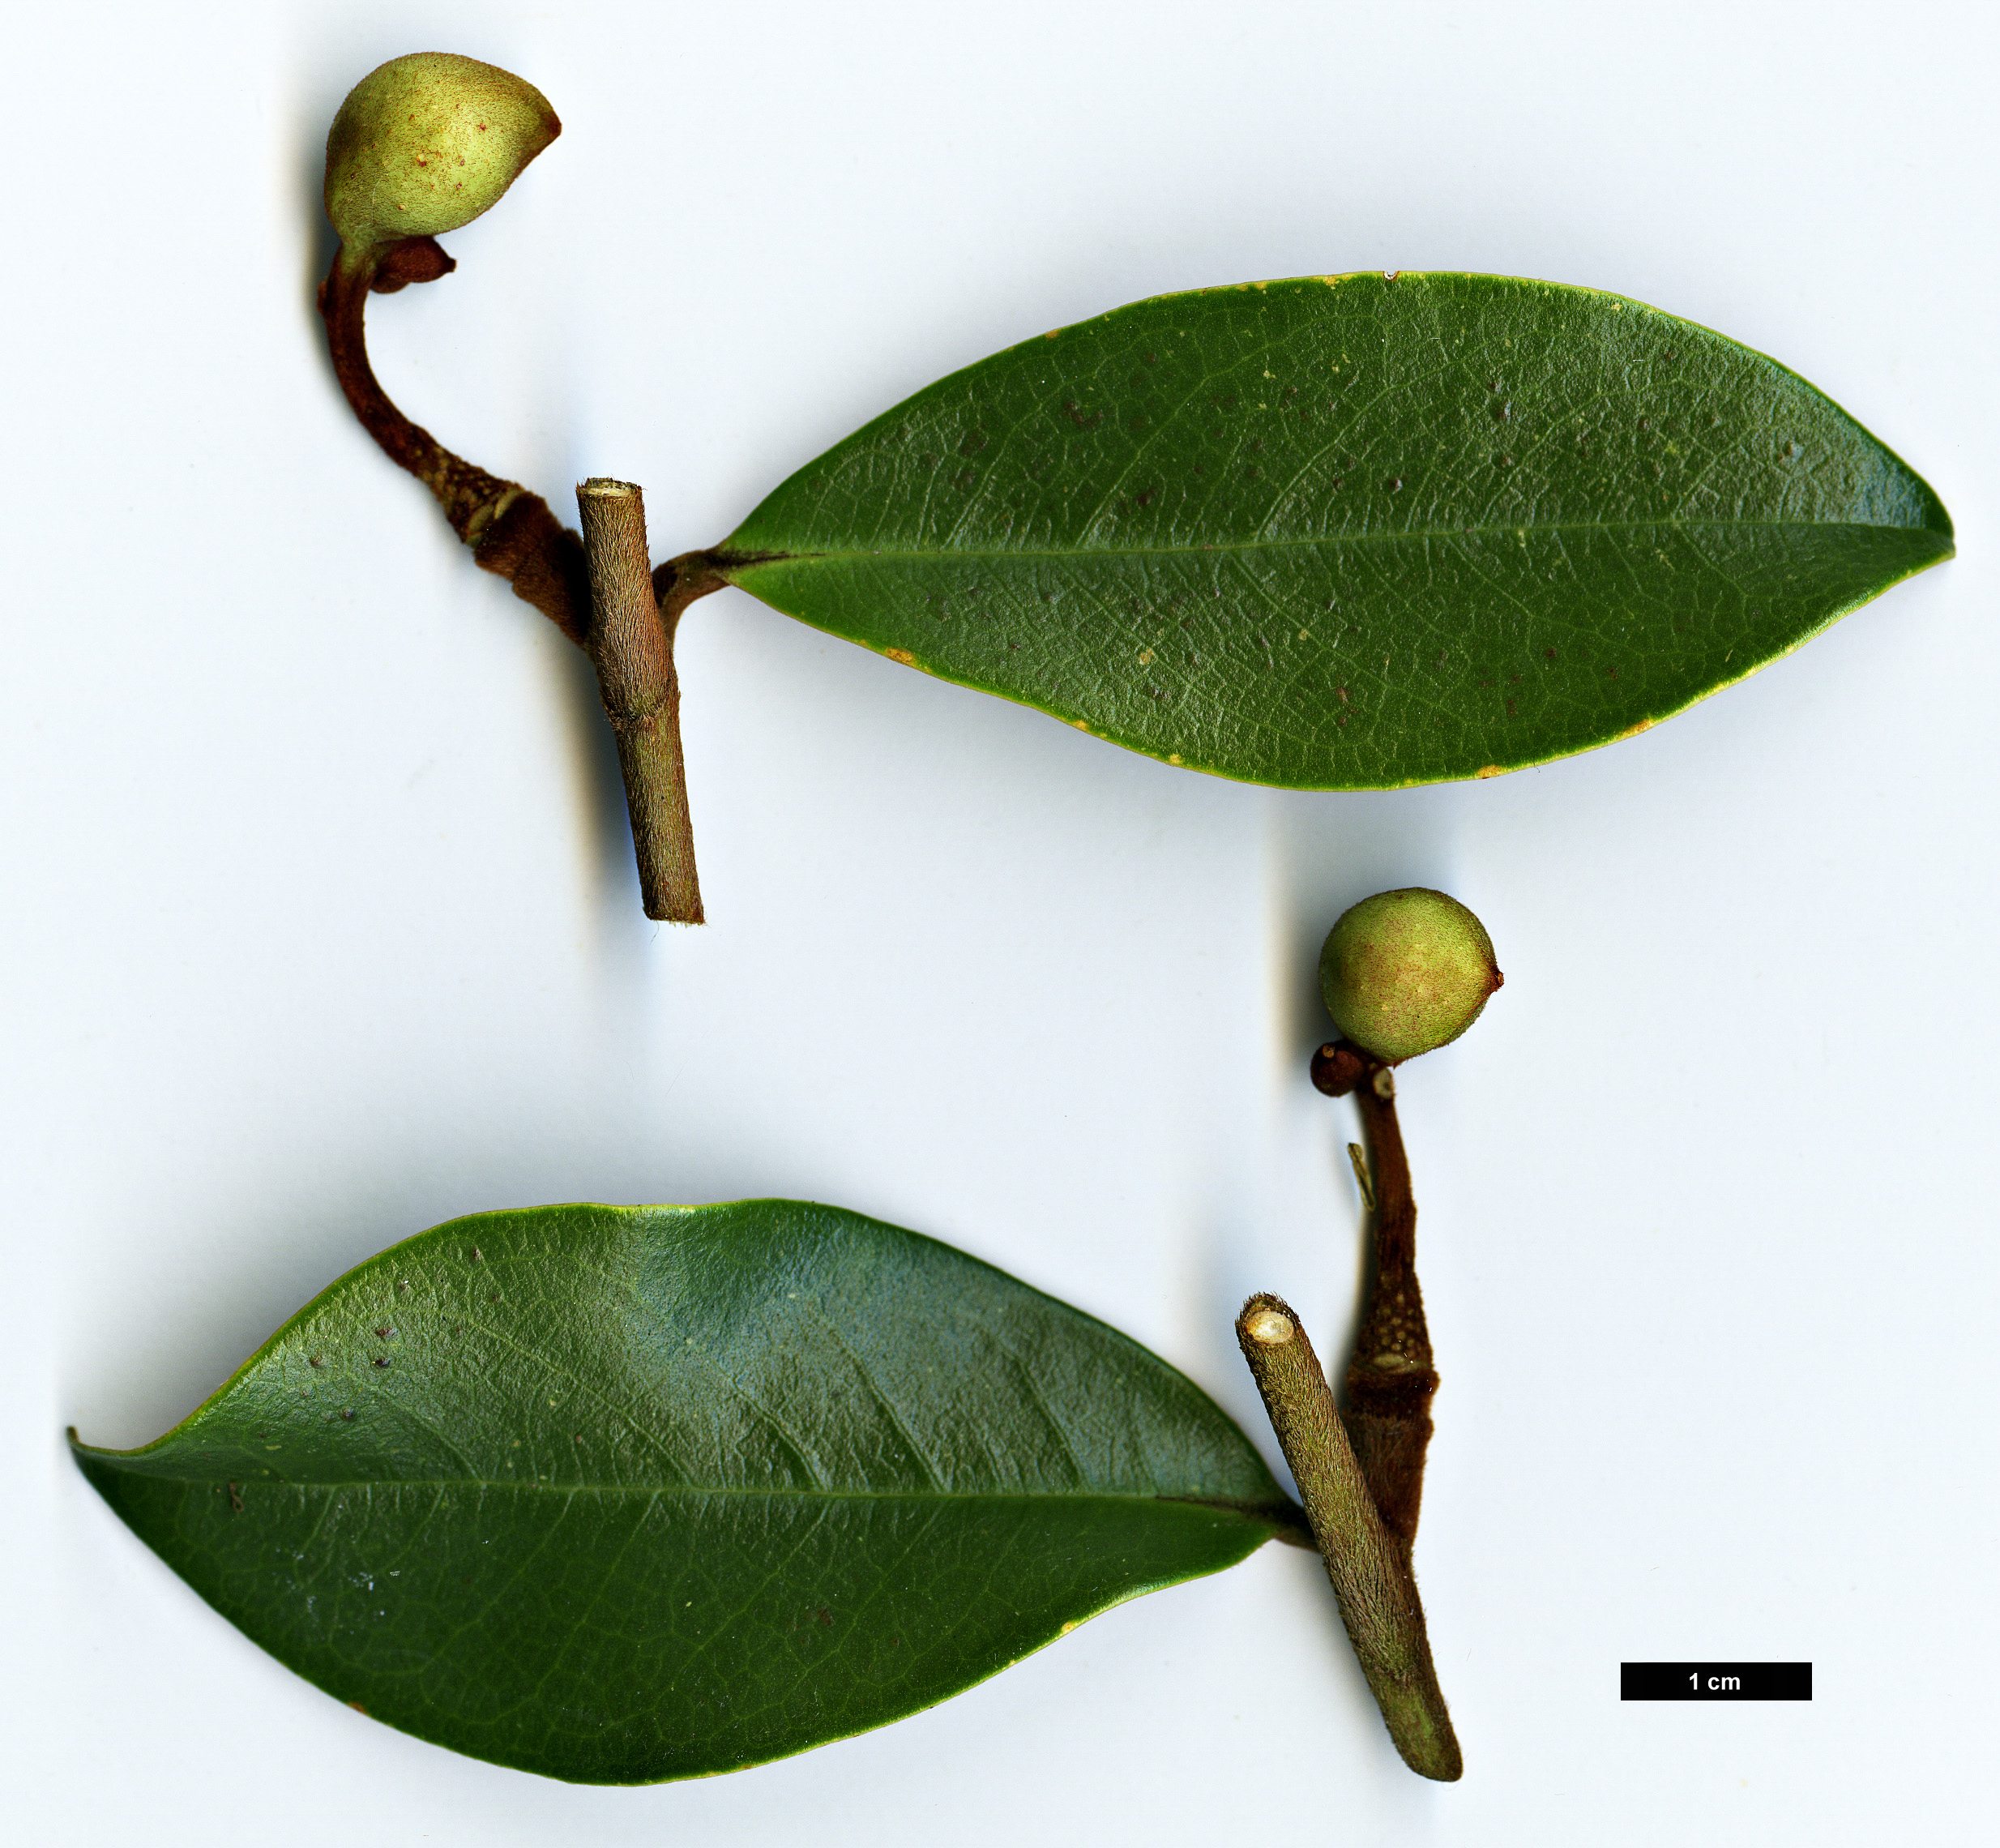 High resolution image: Family: Magnoliaceae - Genus: Magnolia - Taxon: laevifolia